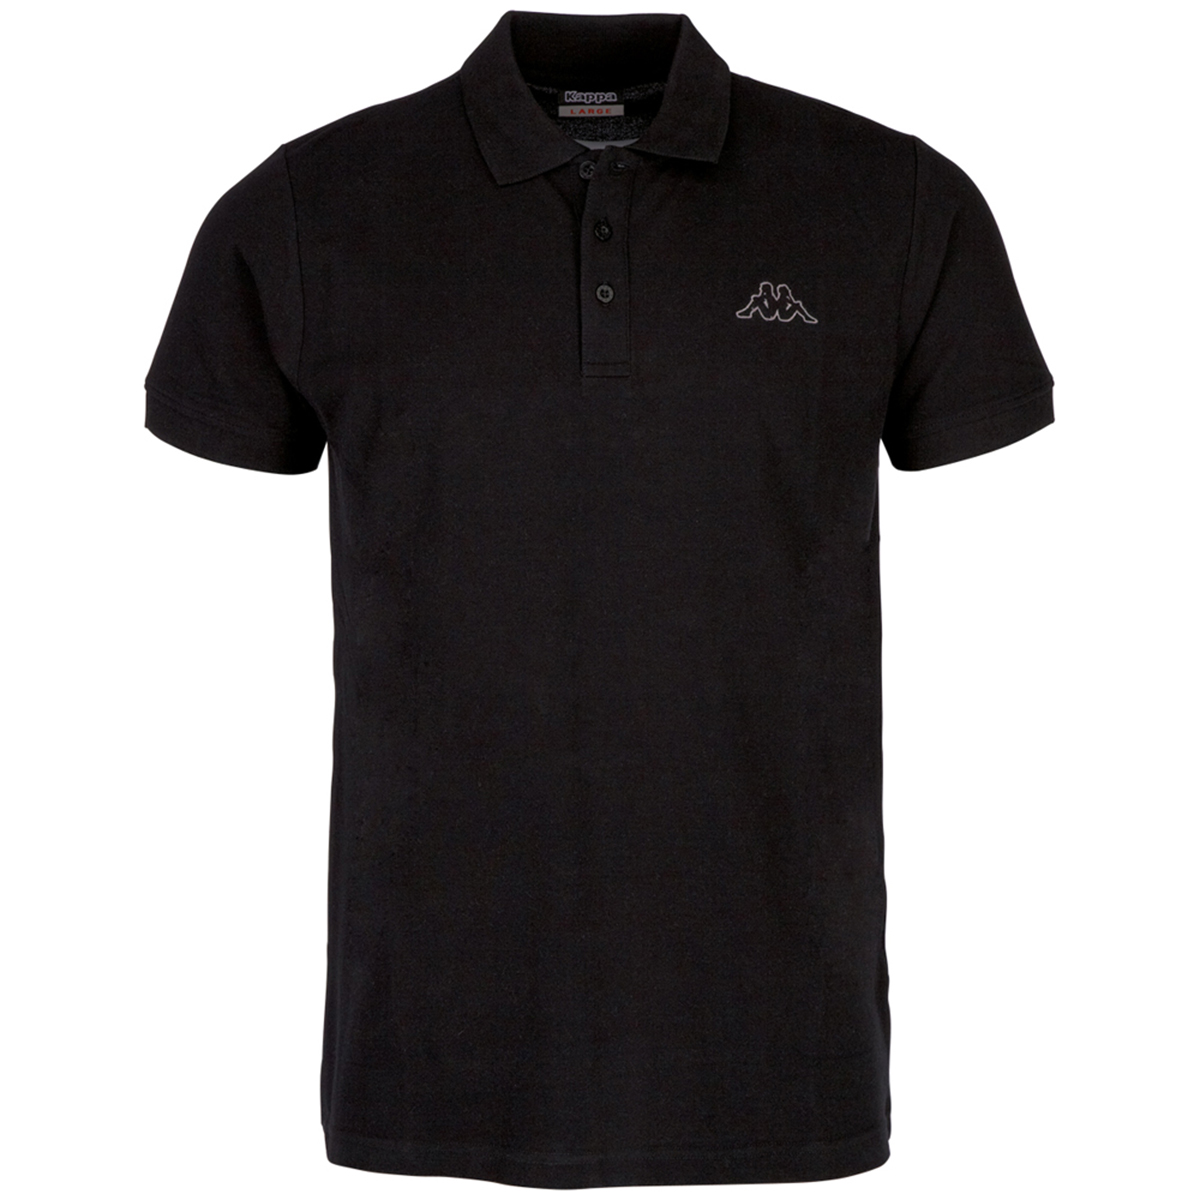 Kappa Unisex Polo Shirt Damen Herren 303173 schwarz von Kappa